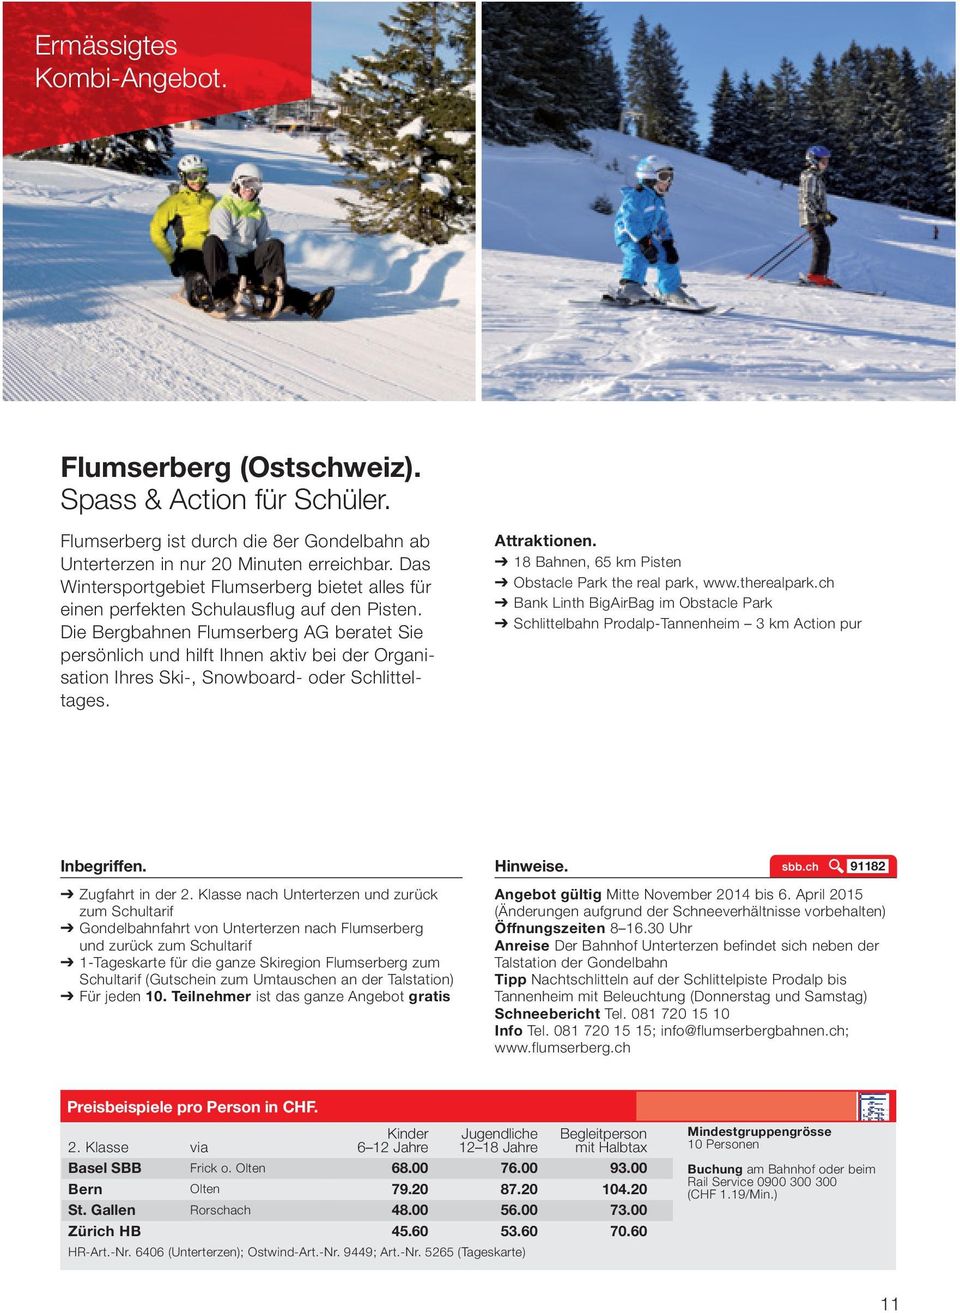 Die Bergbahnen Flumserberg AG beratet Sie persönlich und hilft Ihnen aktiv bei der Organisation Ihres Ski-, Snowboard- oder Schlitteltages. Attraktionen.